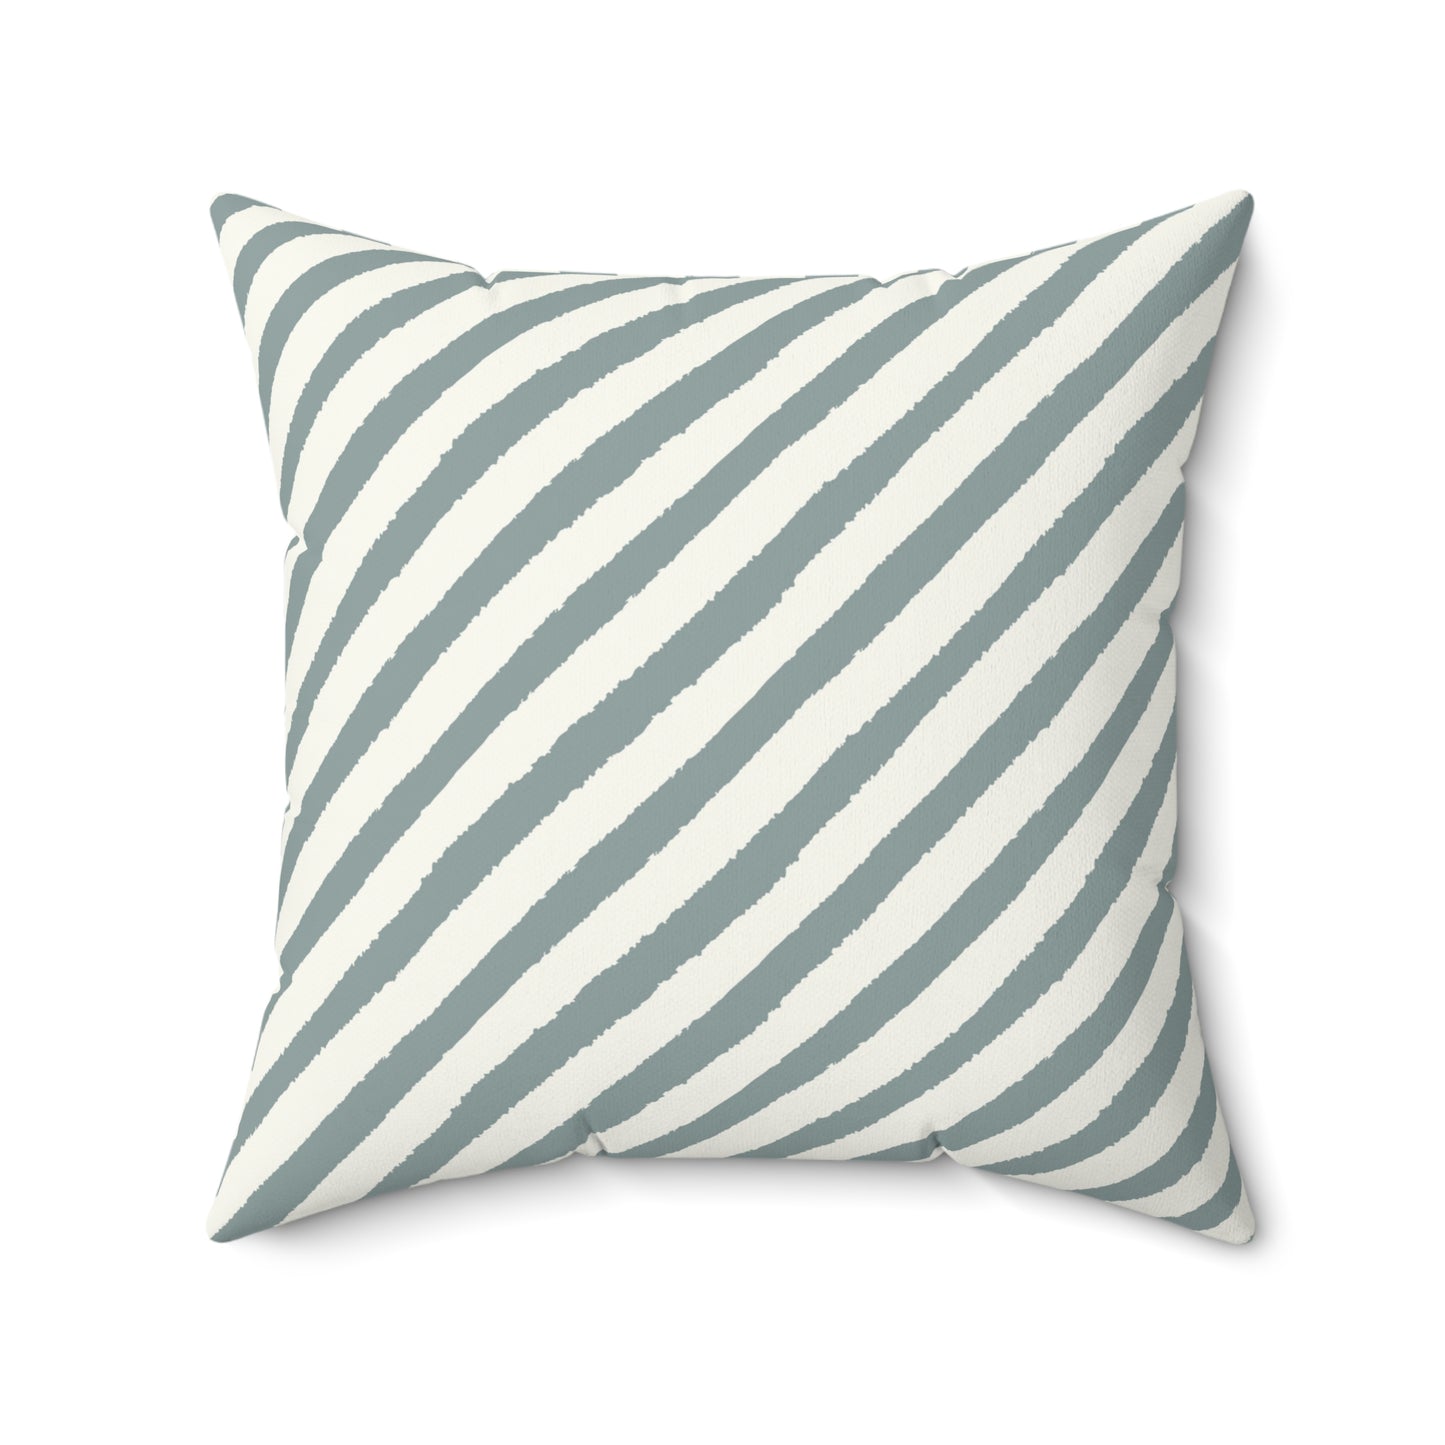 Stripe Throw Pillow Coastal Accent Pillow Boho Farmhouse Abstract Pillow